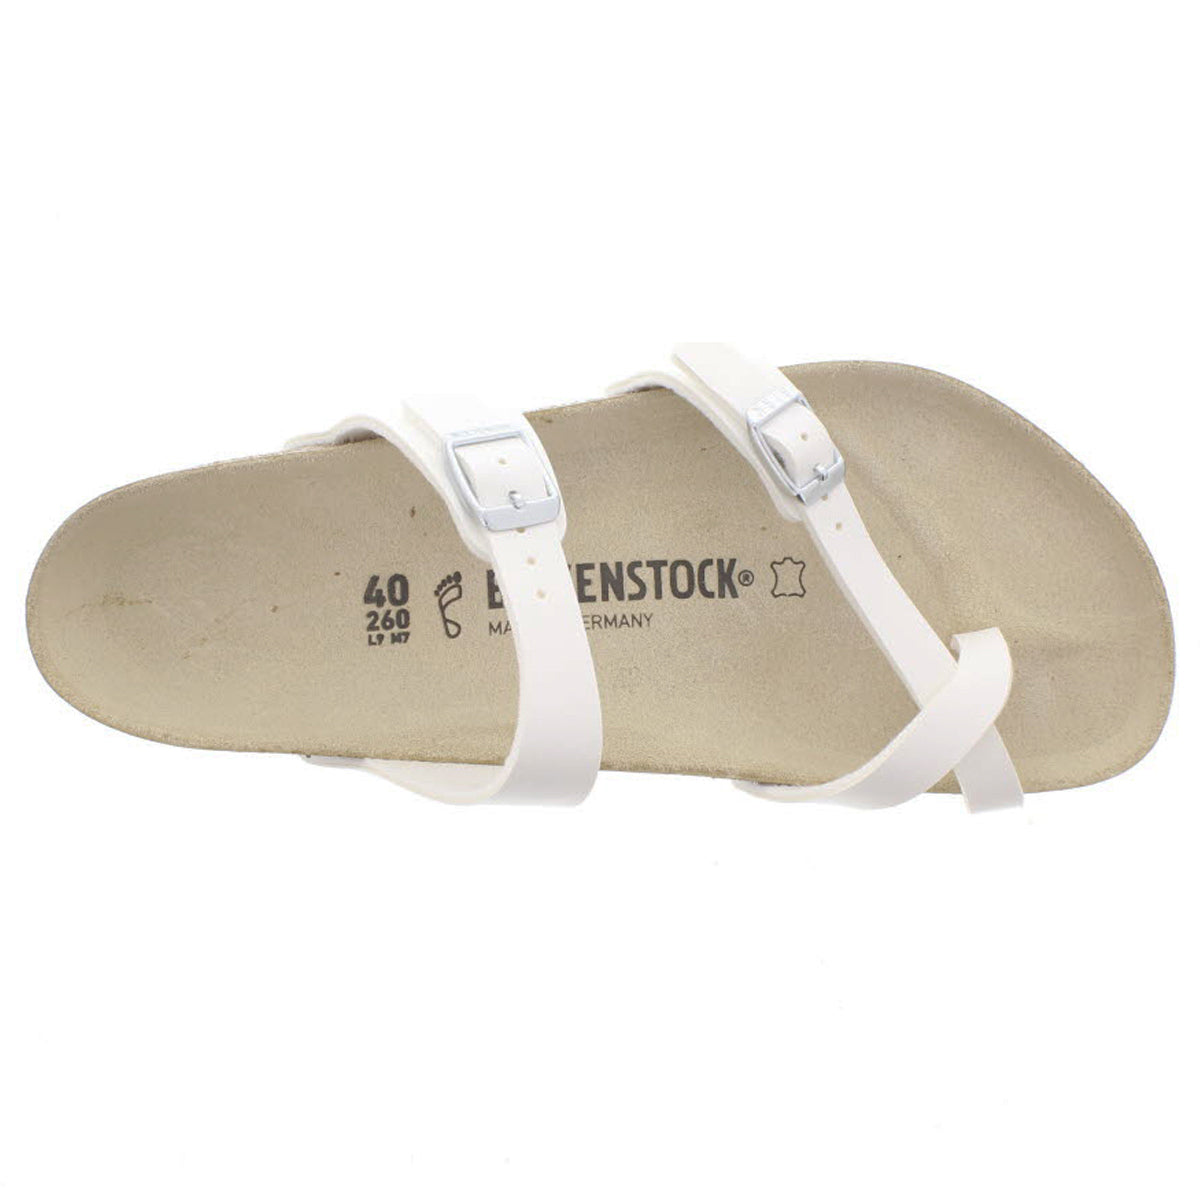 Birkenstock Mayari White Womens Sandals#color_white